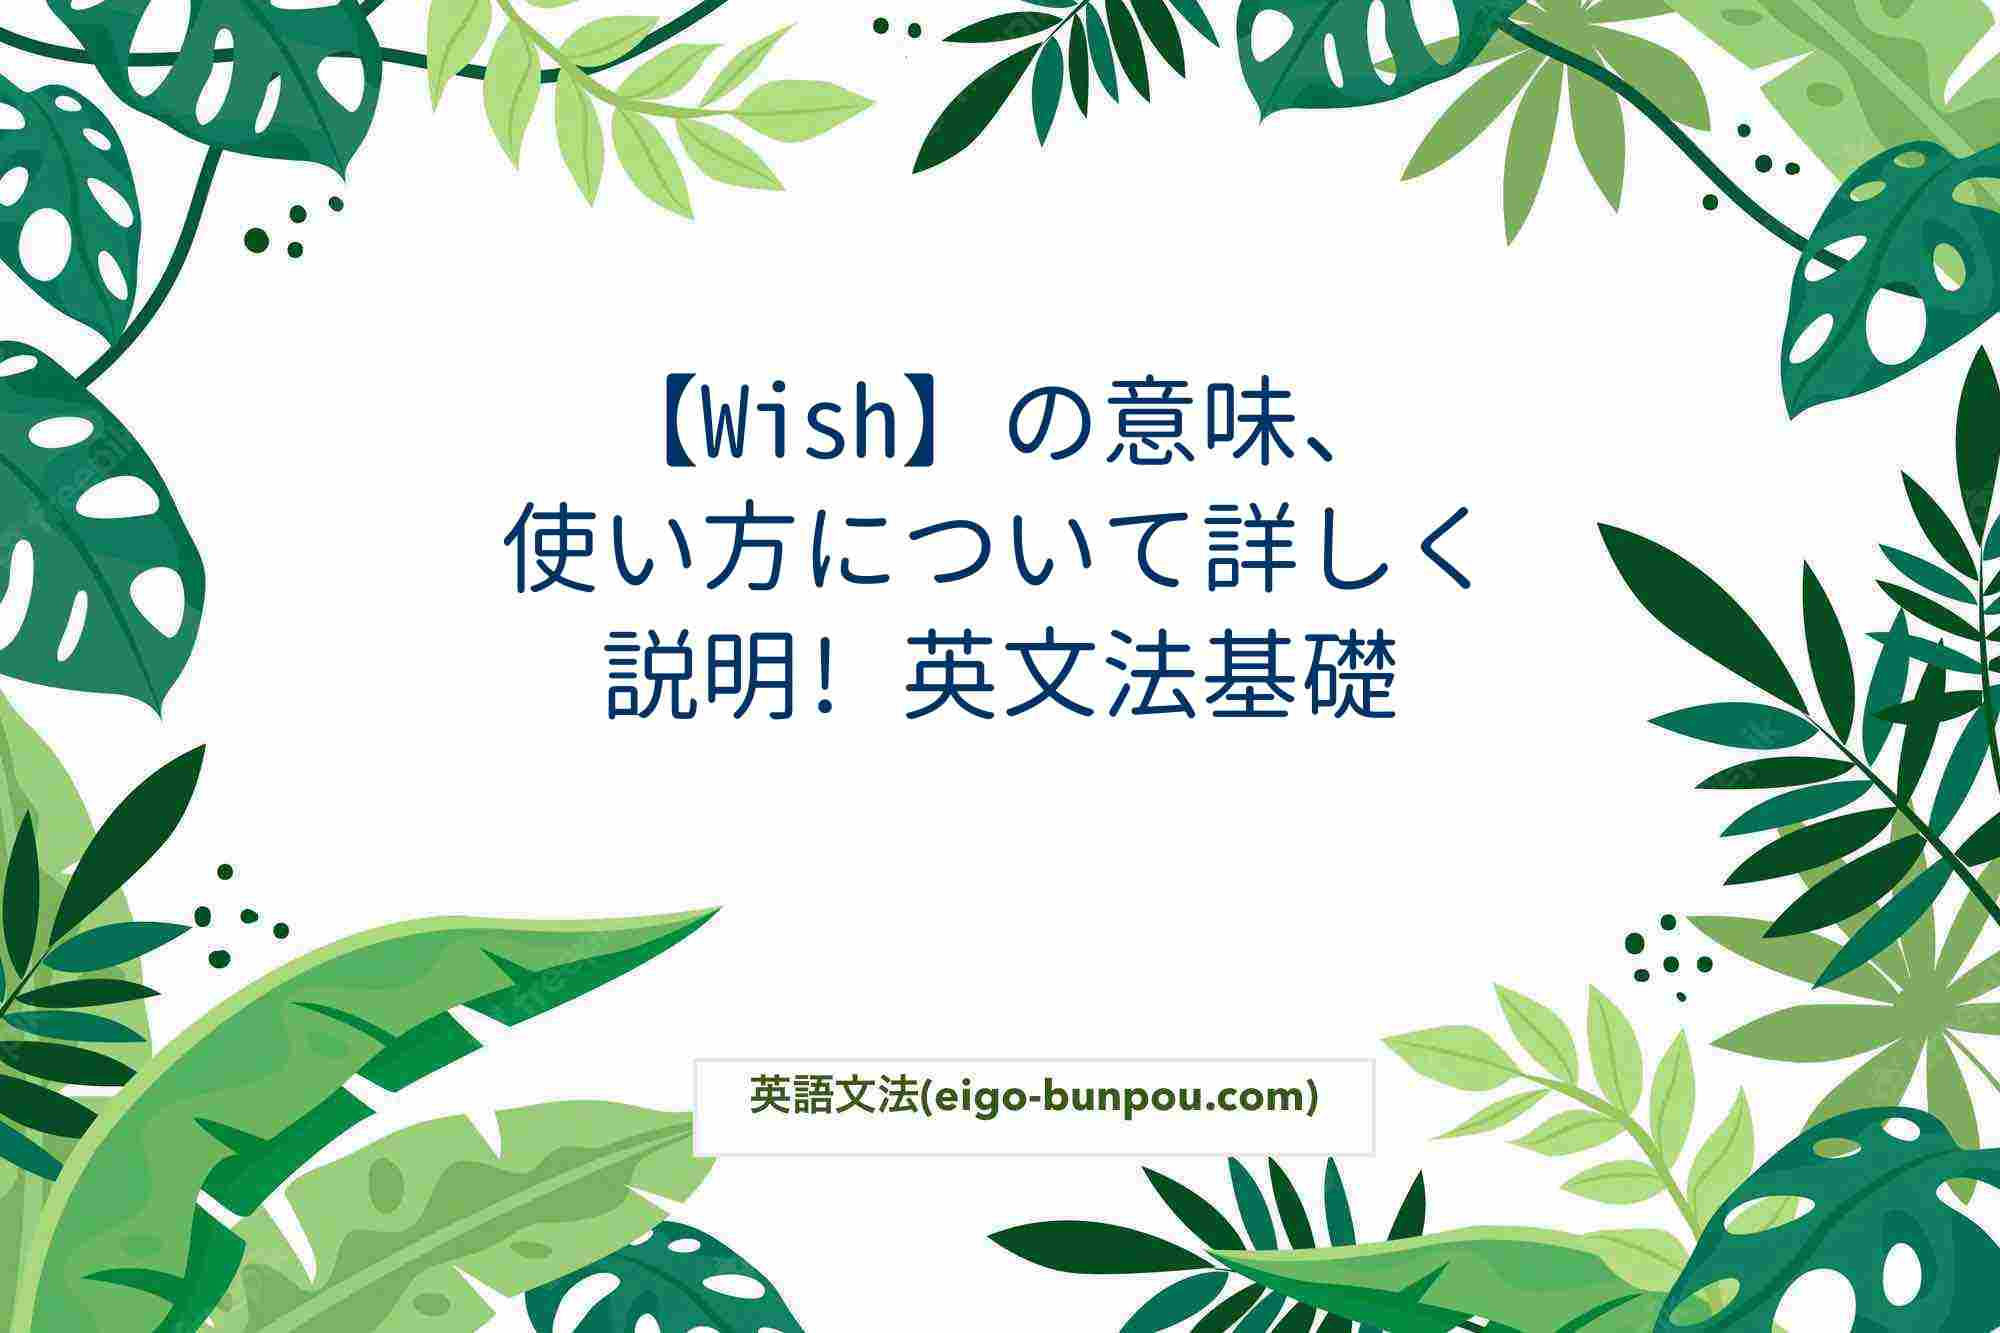 【Wish】の意味、使い方について詳しく説明! 英文法基礎